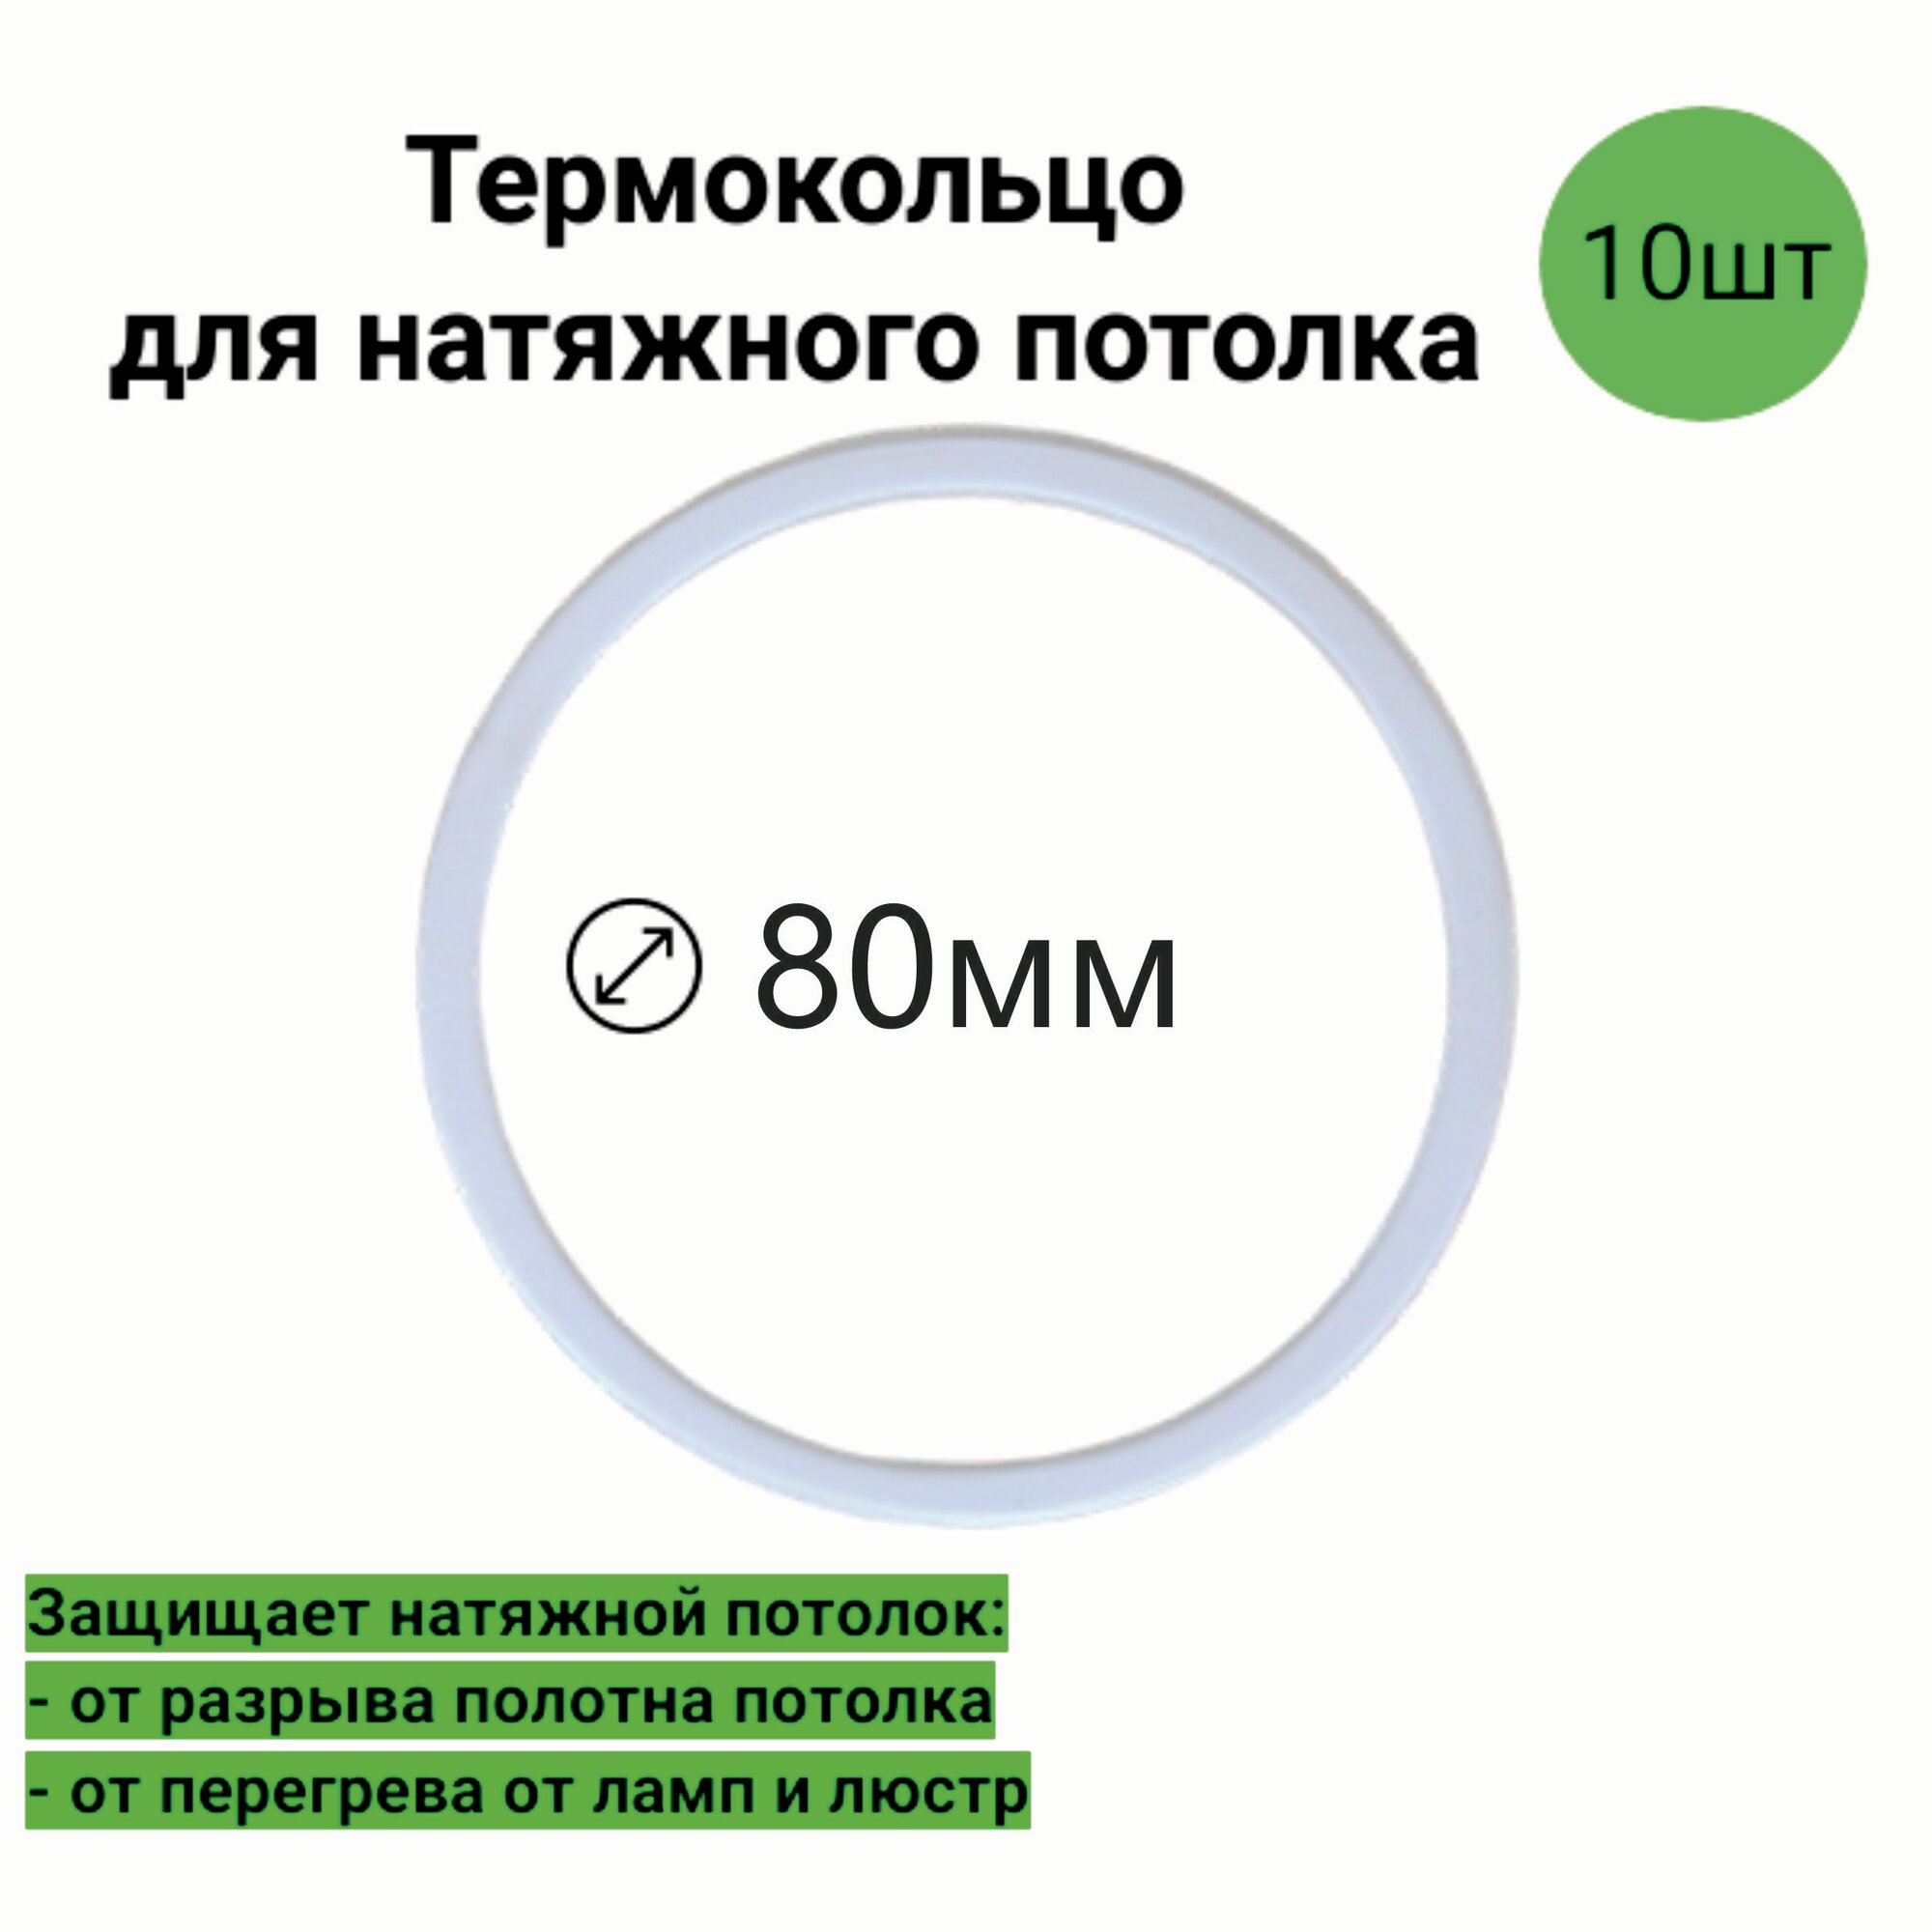 Термокольцо для натяжного потолка D-80мм (10шт)